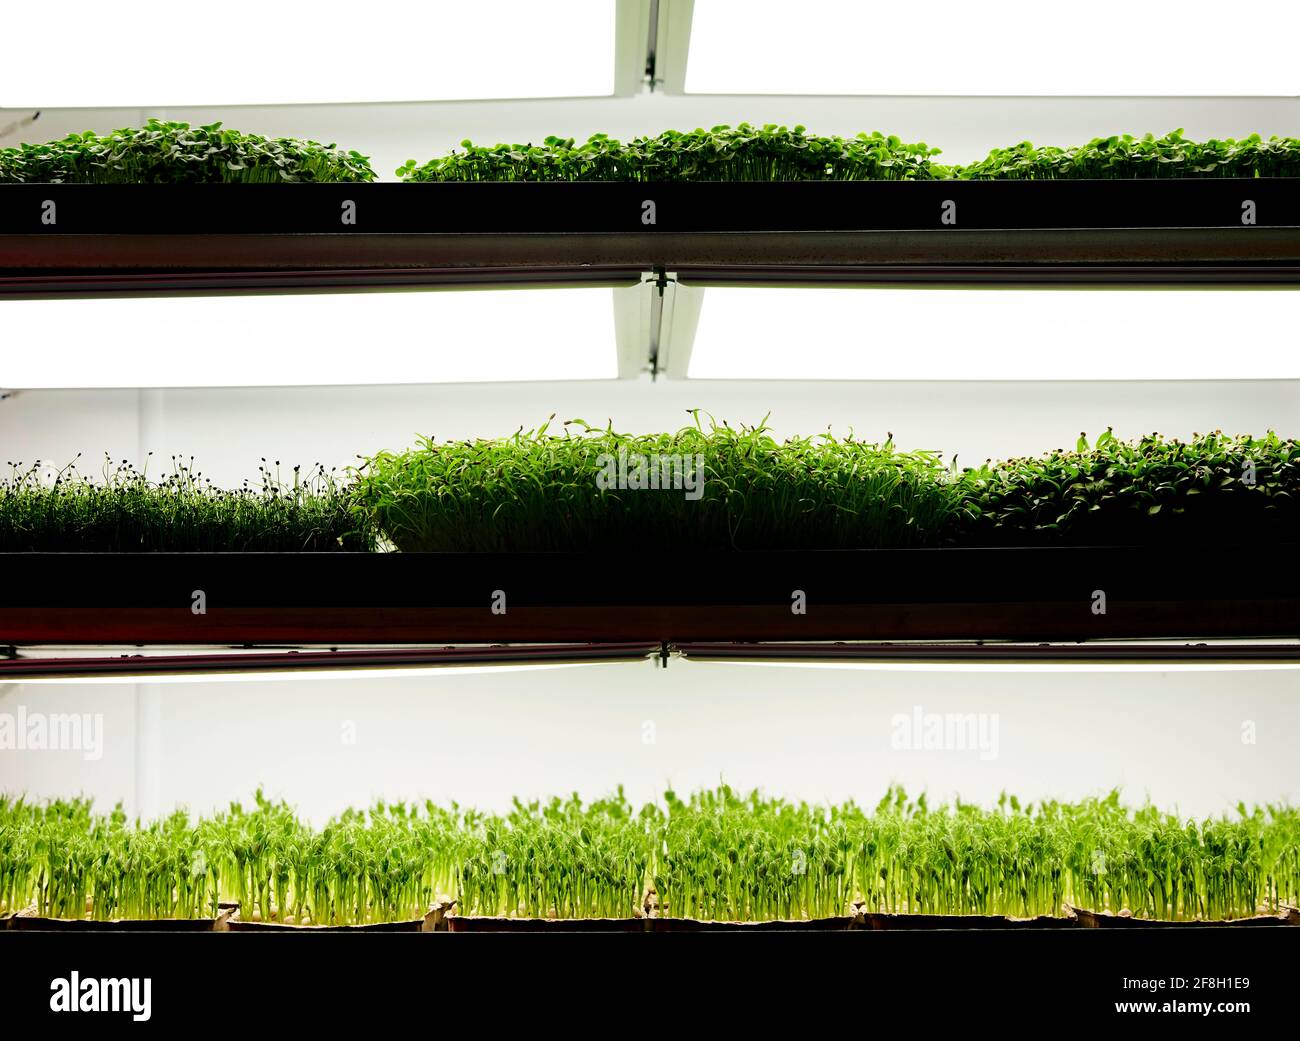 Trays of microgreen seedlings growing in urban farm Stock Photo